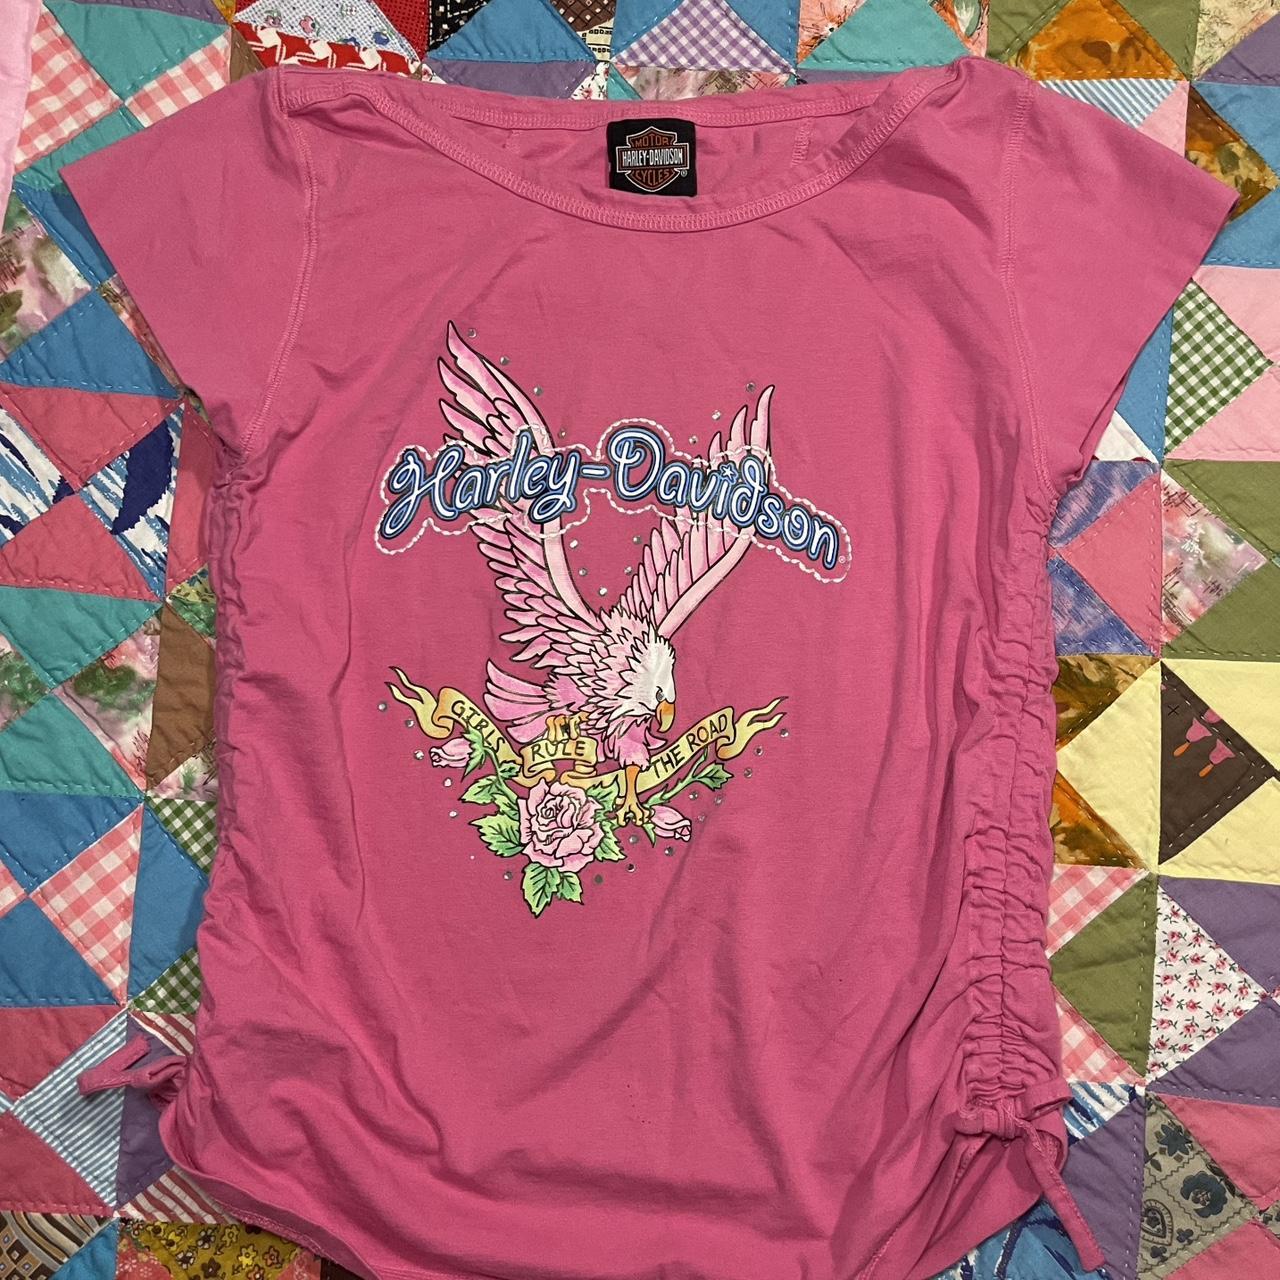 Harley Davidson Pink T Shirt Depop 